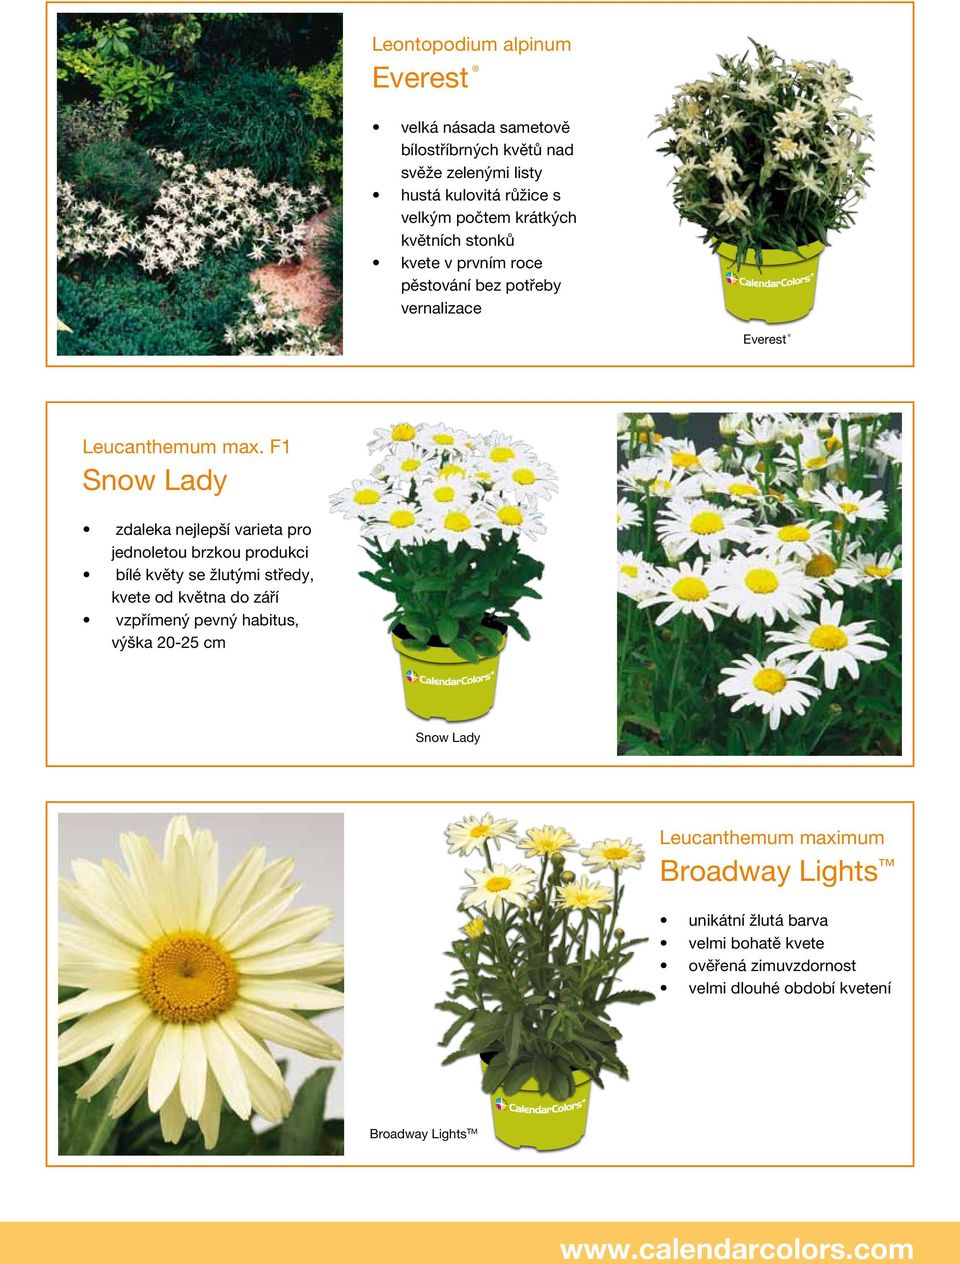 F1 Snow Lady zdaleka nejlepší varieta pro jednoletou brzkou produkci bílé květy se žlutými středy, kvete od května do září vzpřímený pevný